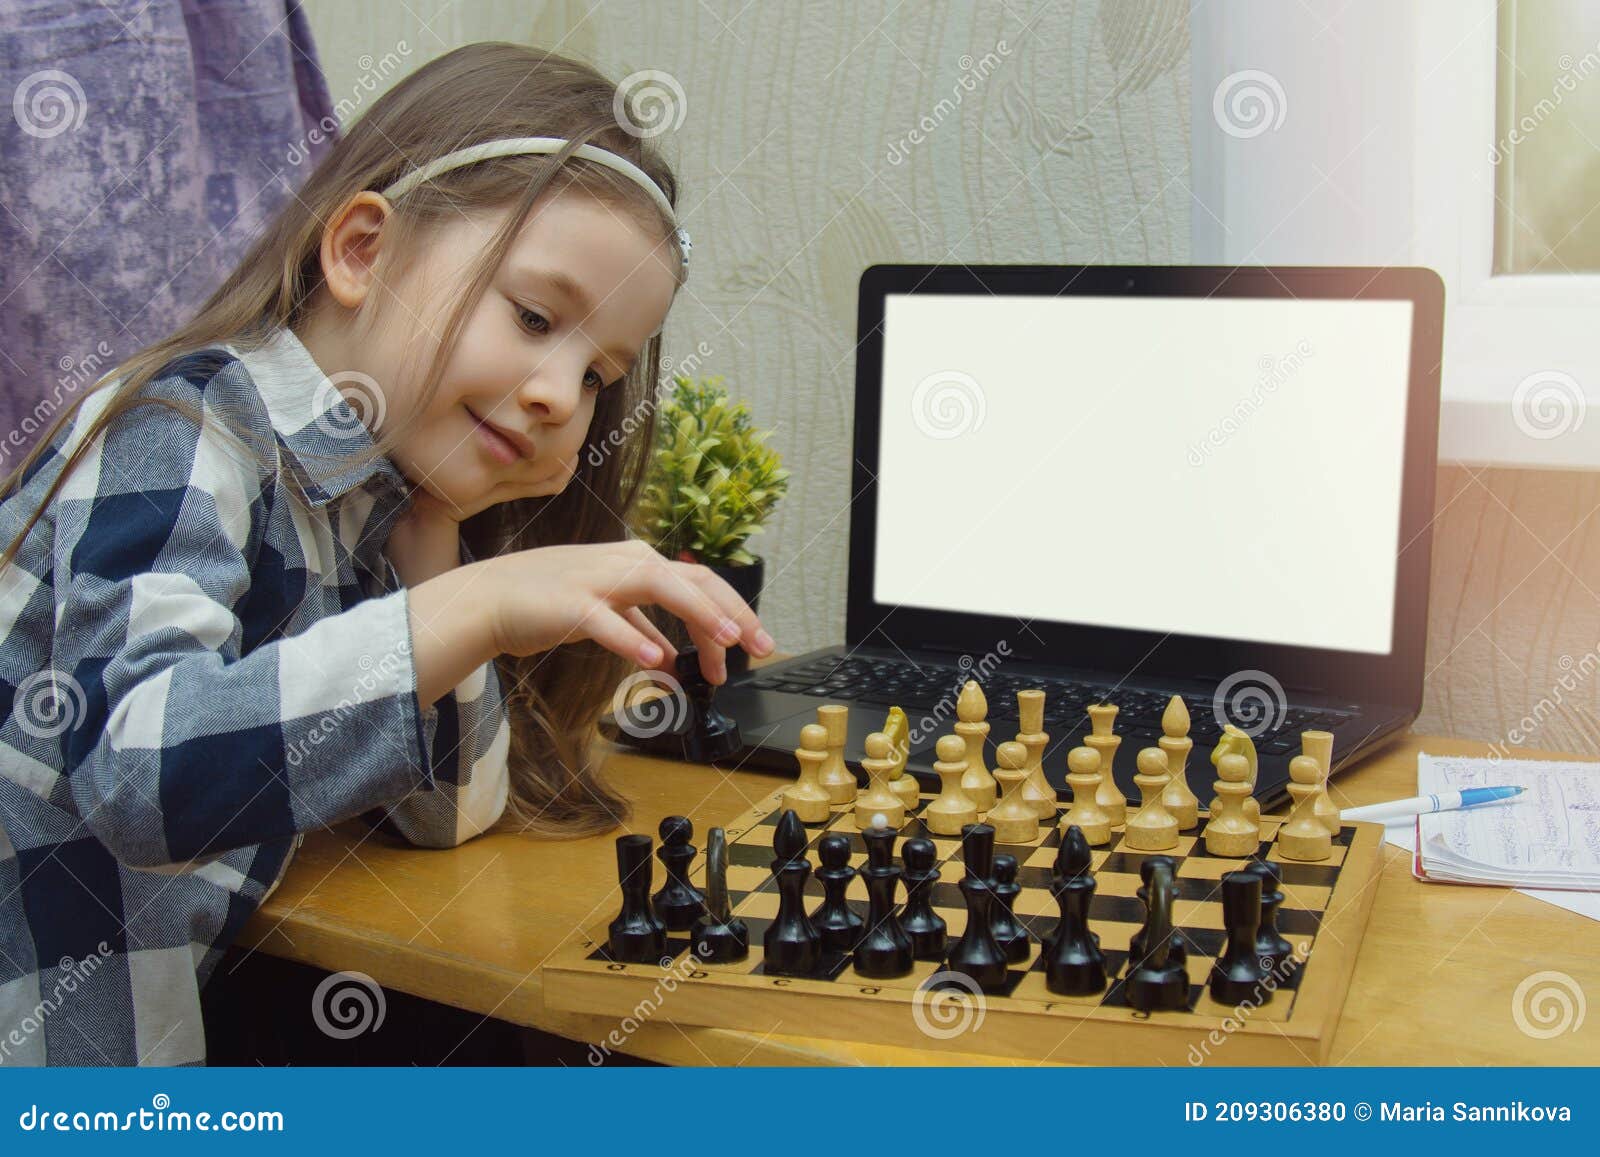 Cursos De Xadrez Online Para Crianças. Criança Com Tabuleiro De Xadrez E  Laptop. Garotinha Joga Xadrez Na Internet. Jogos Para Foto de Stock -  Imagem de desenvolvimento, verificadores: 209306380